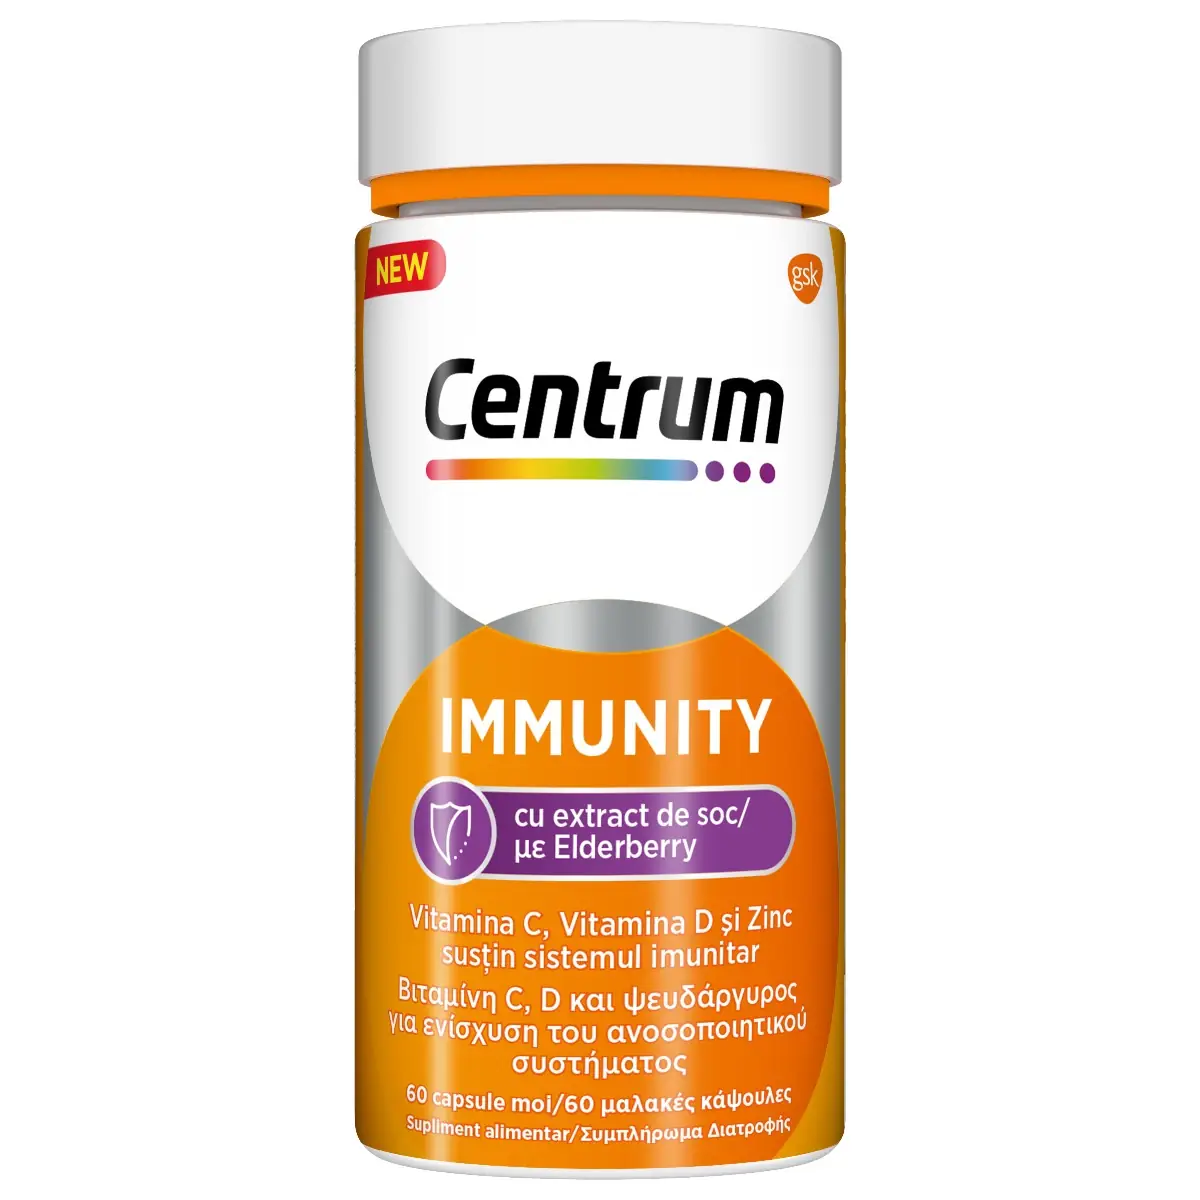 Minerale, vitamine  - Centrum Immunity cu extract de soc, 60 capsule, Centrum, nordpharm.ro